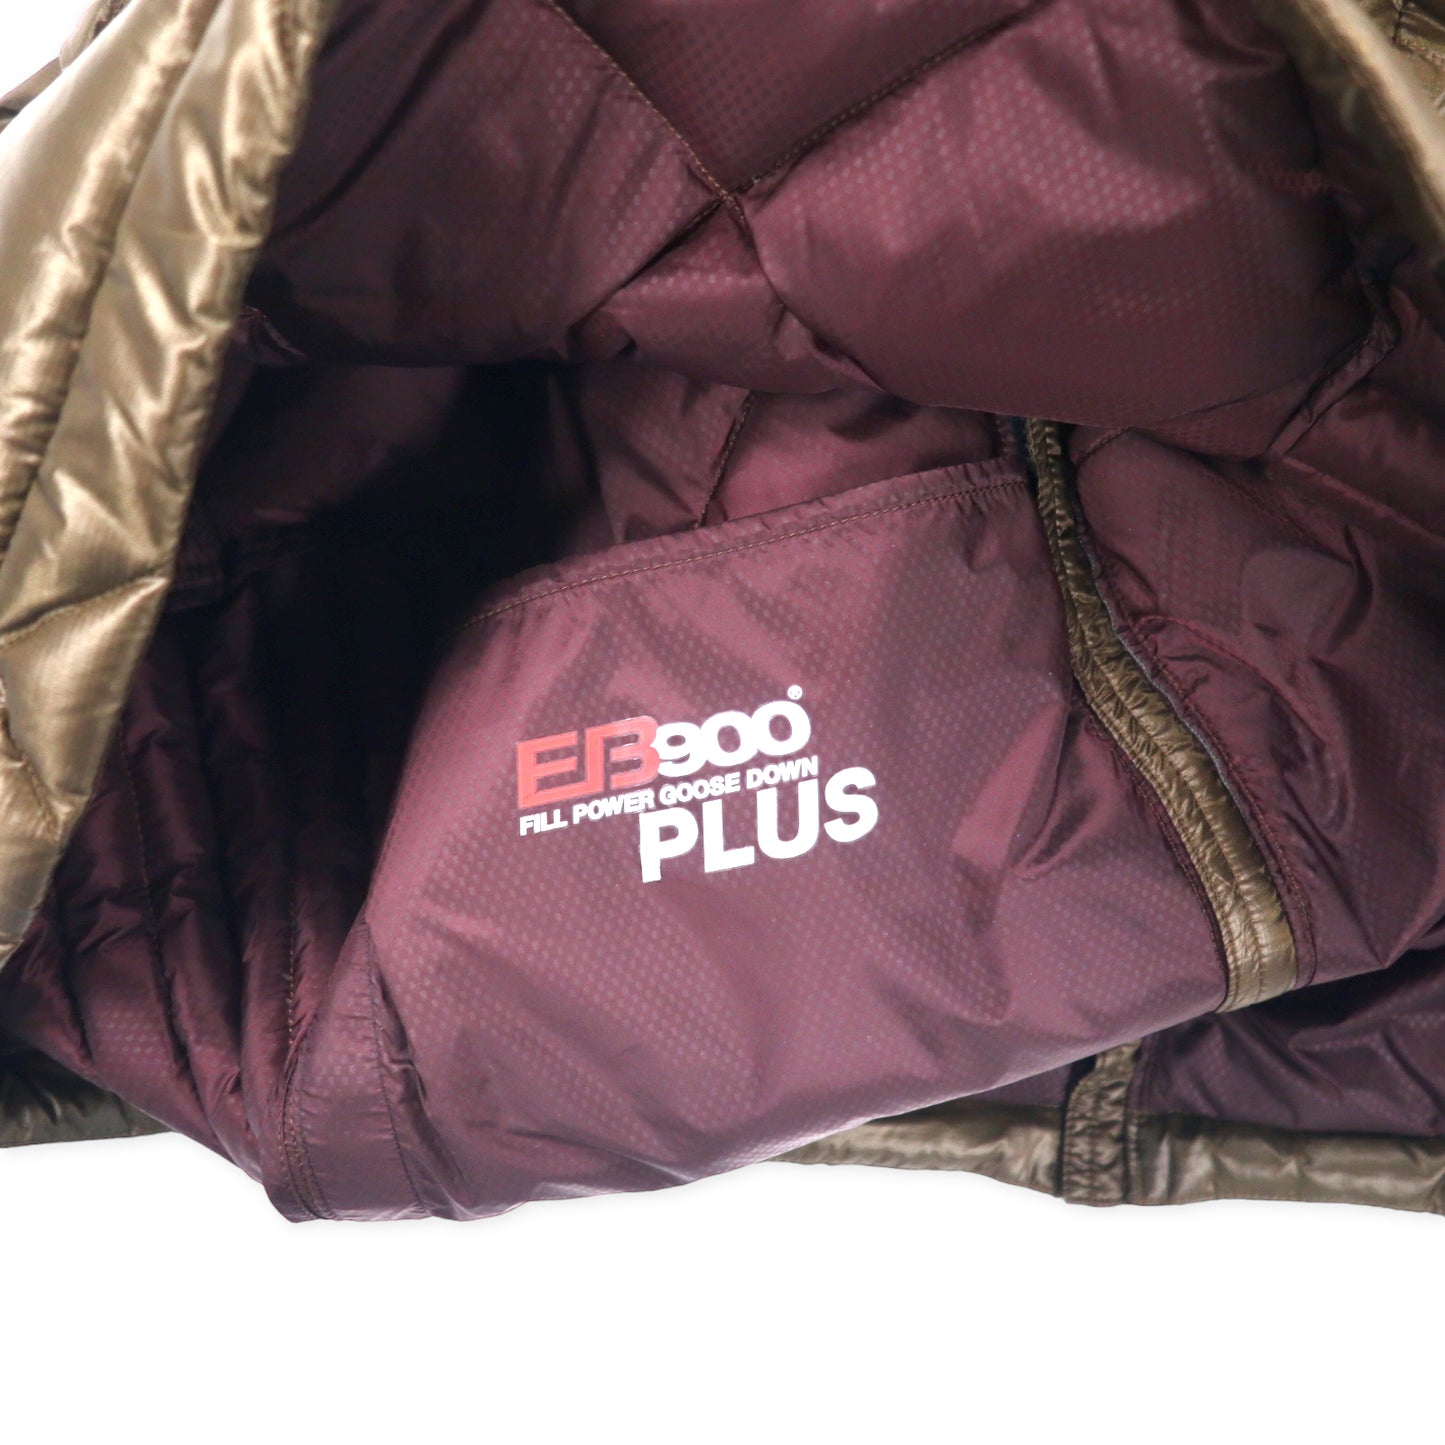 Eddie Bauer 900フィルパワー プラス ダウンジャケット M カーキ ブラウン ナイロン ワンポイントロゴ刺繍 EB900 PLUS